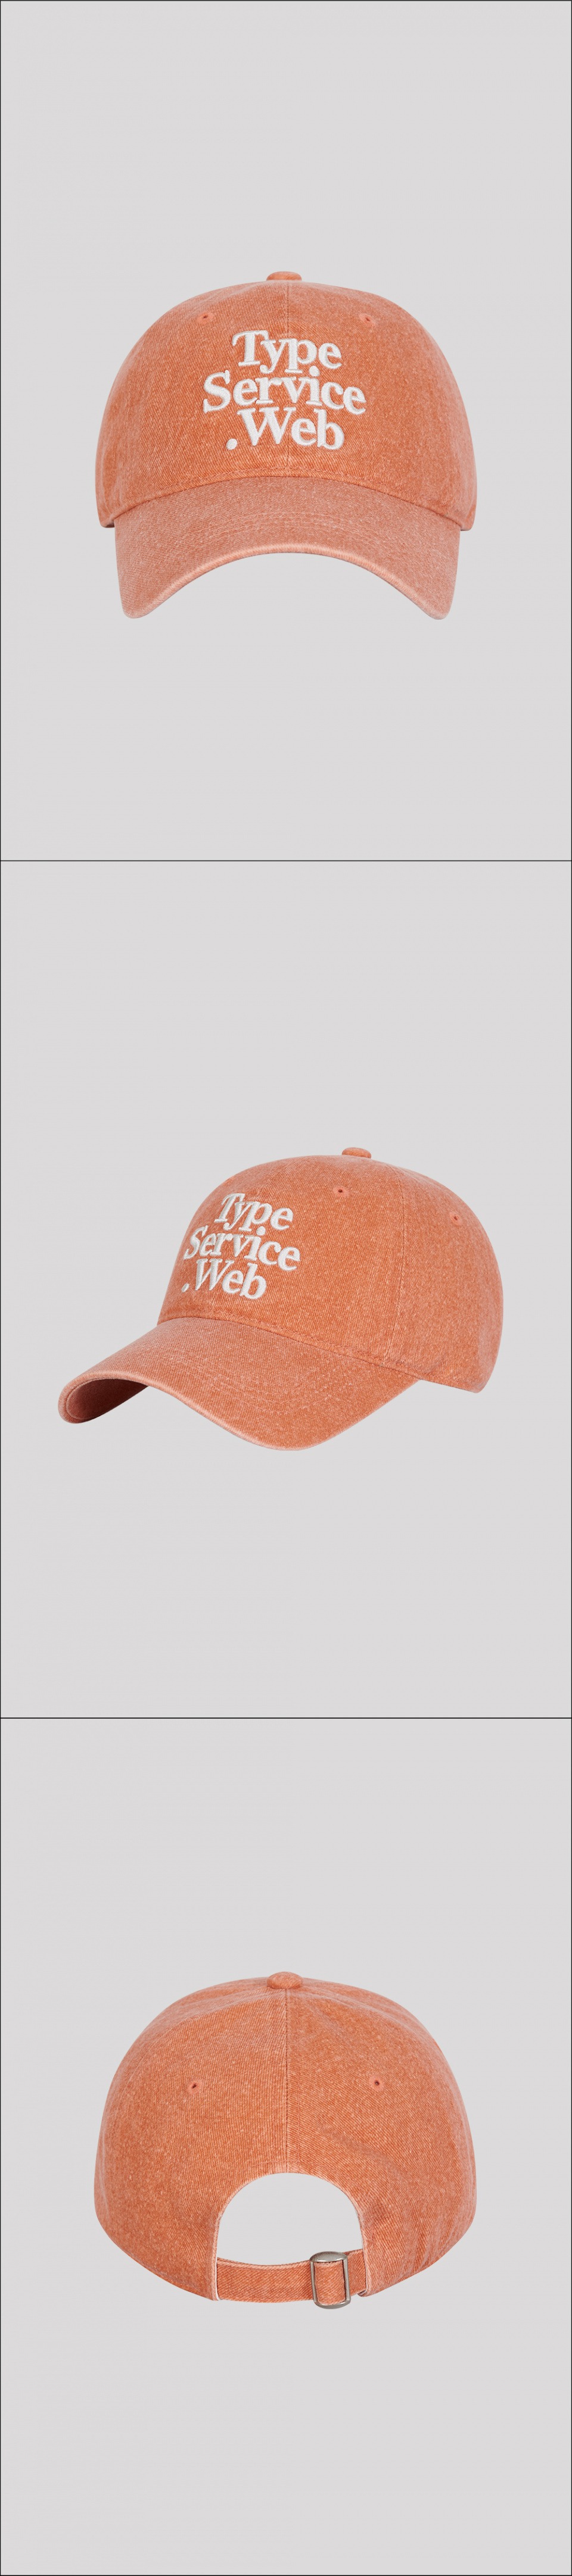 타입서비스(TYPE SERVICE) Typeservice Web Cap [Light Orange]